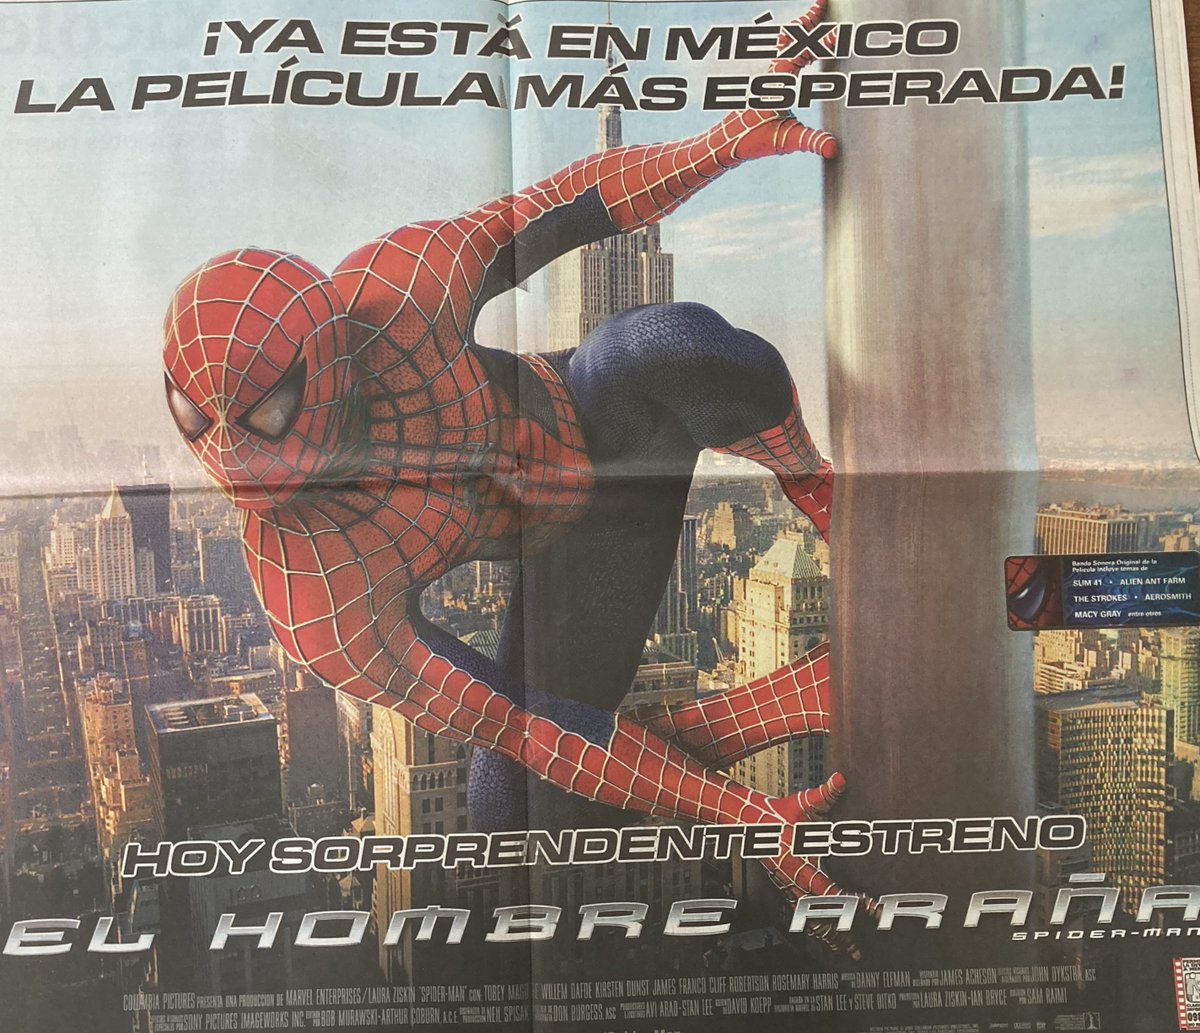 El 18 de mayo de 2002. se estrenó en los cines de México una de las películas más esperadas del año: El Hombre Araña. #PrimerasPlanas @El_Universal_Mx, 18 de mayo de 2006, Biblioteca-Hemeroteca Ignacio Cubas.